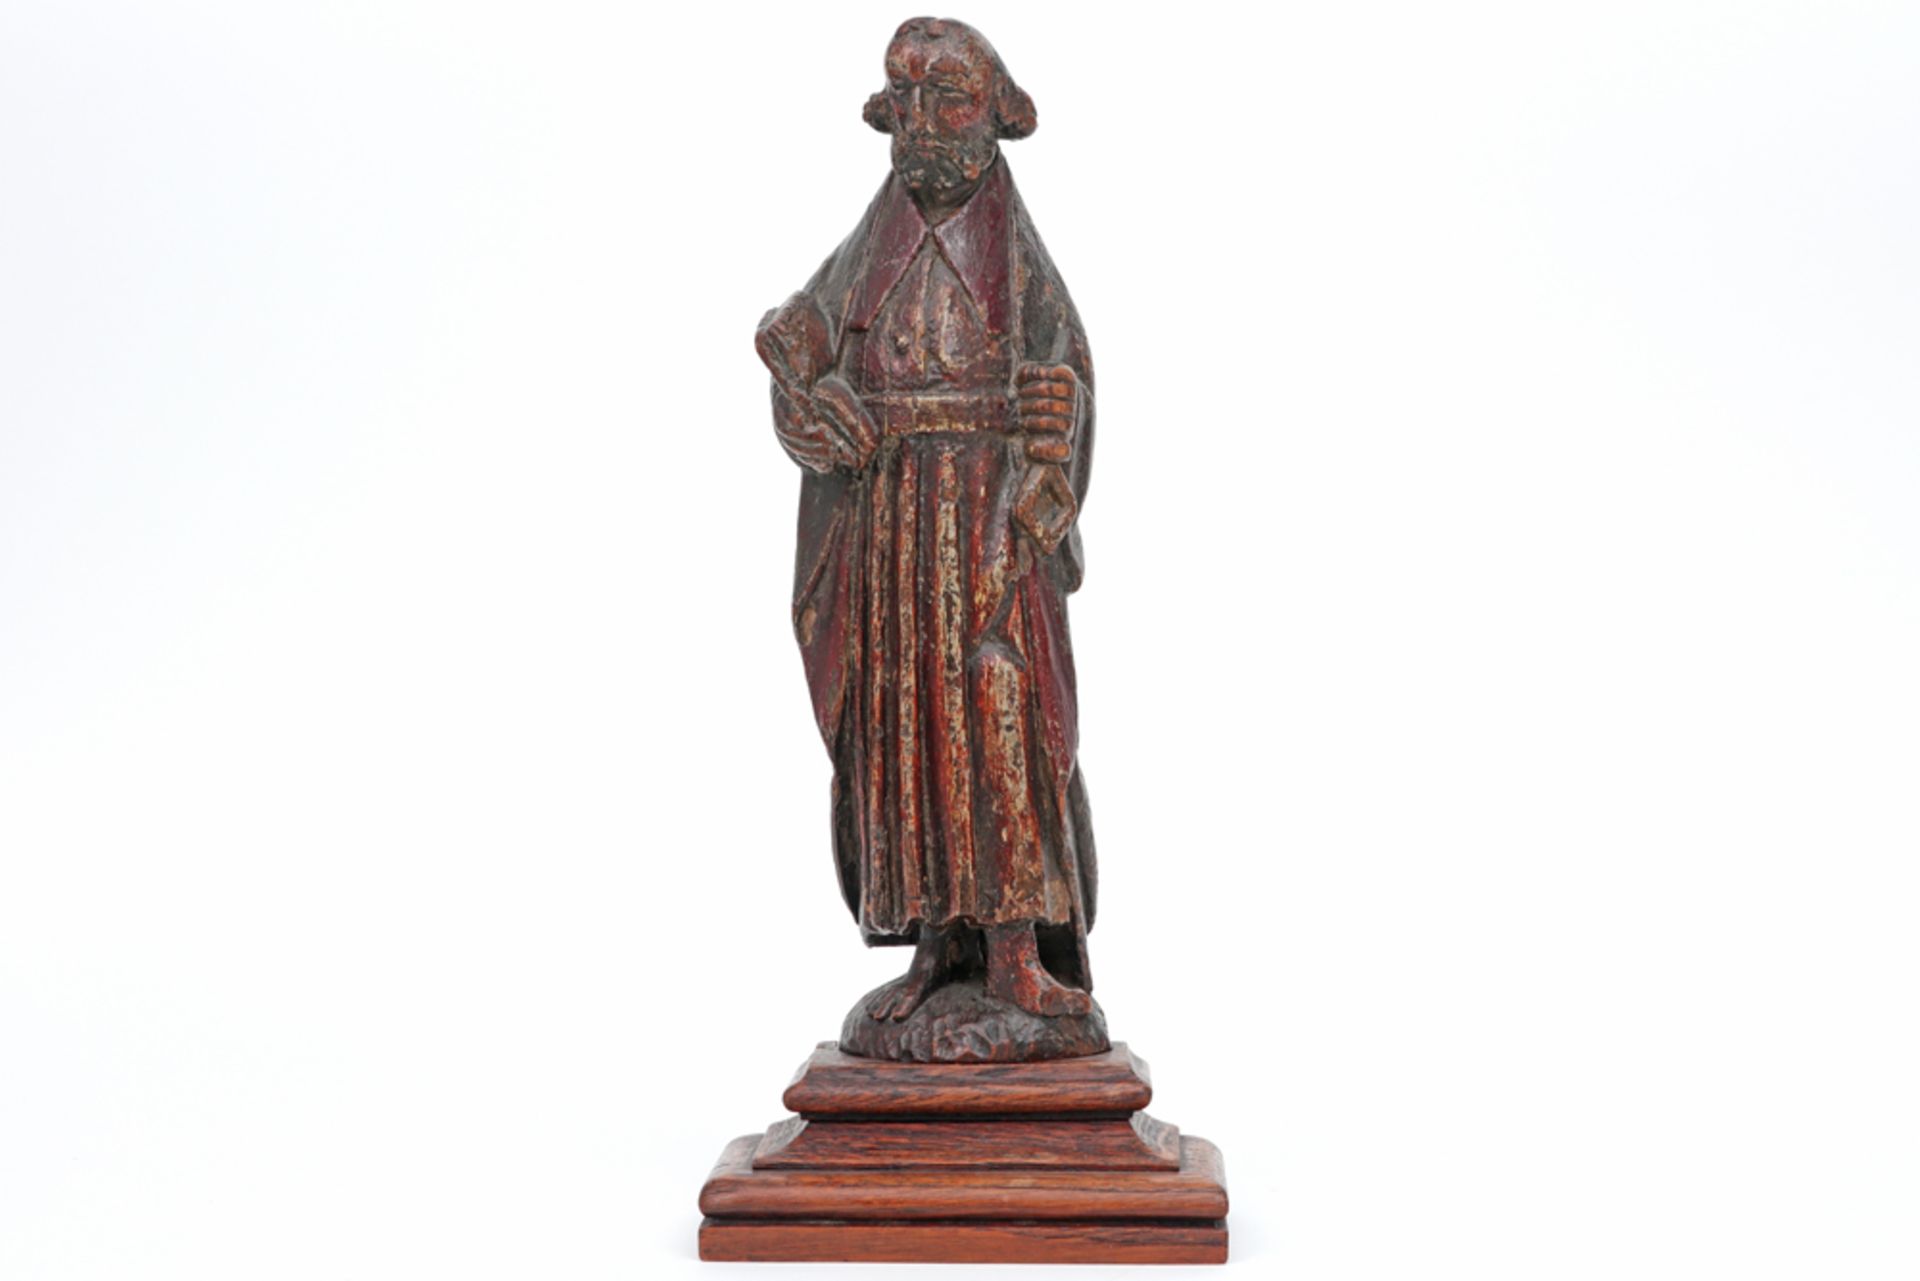 antique naive folk style wood sculpture || Antieke houtsculptuur in een volkse stijl : "Heilige